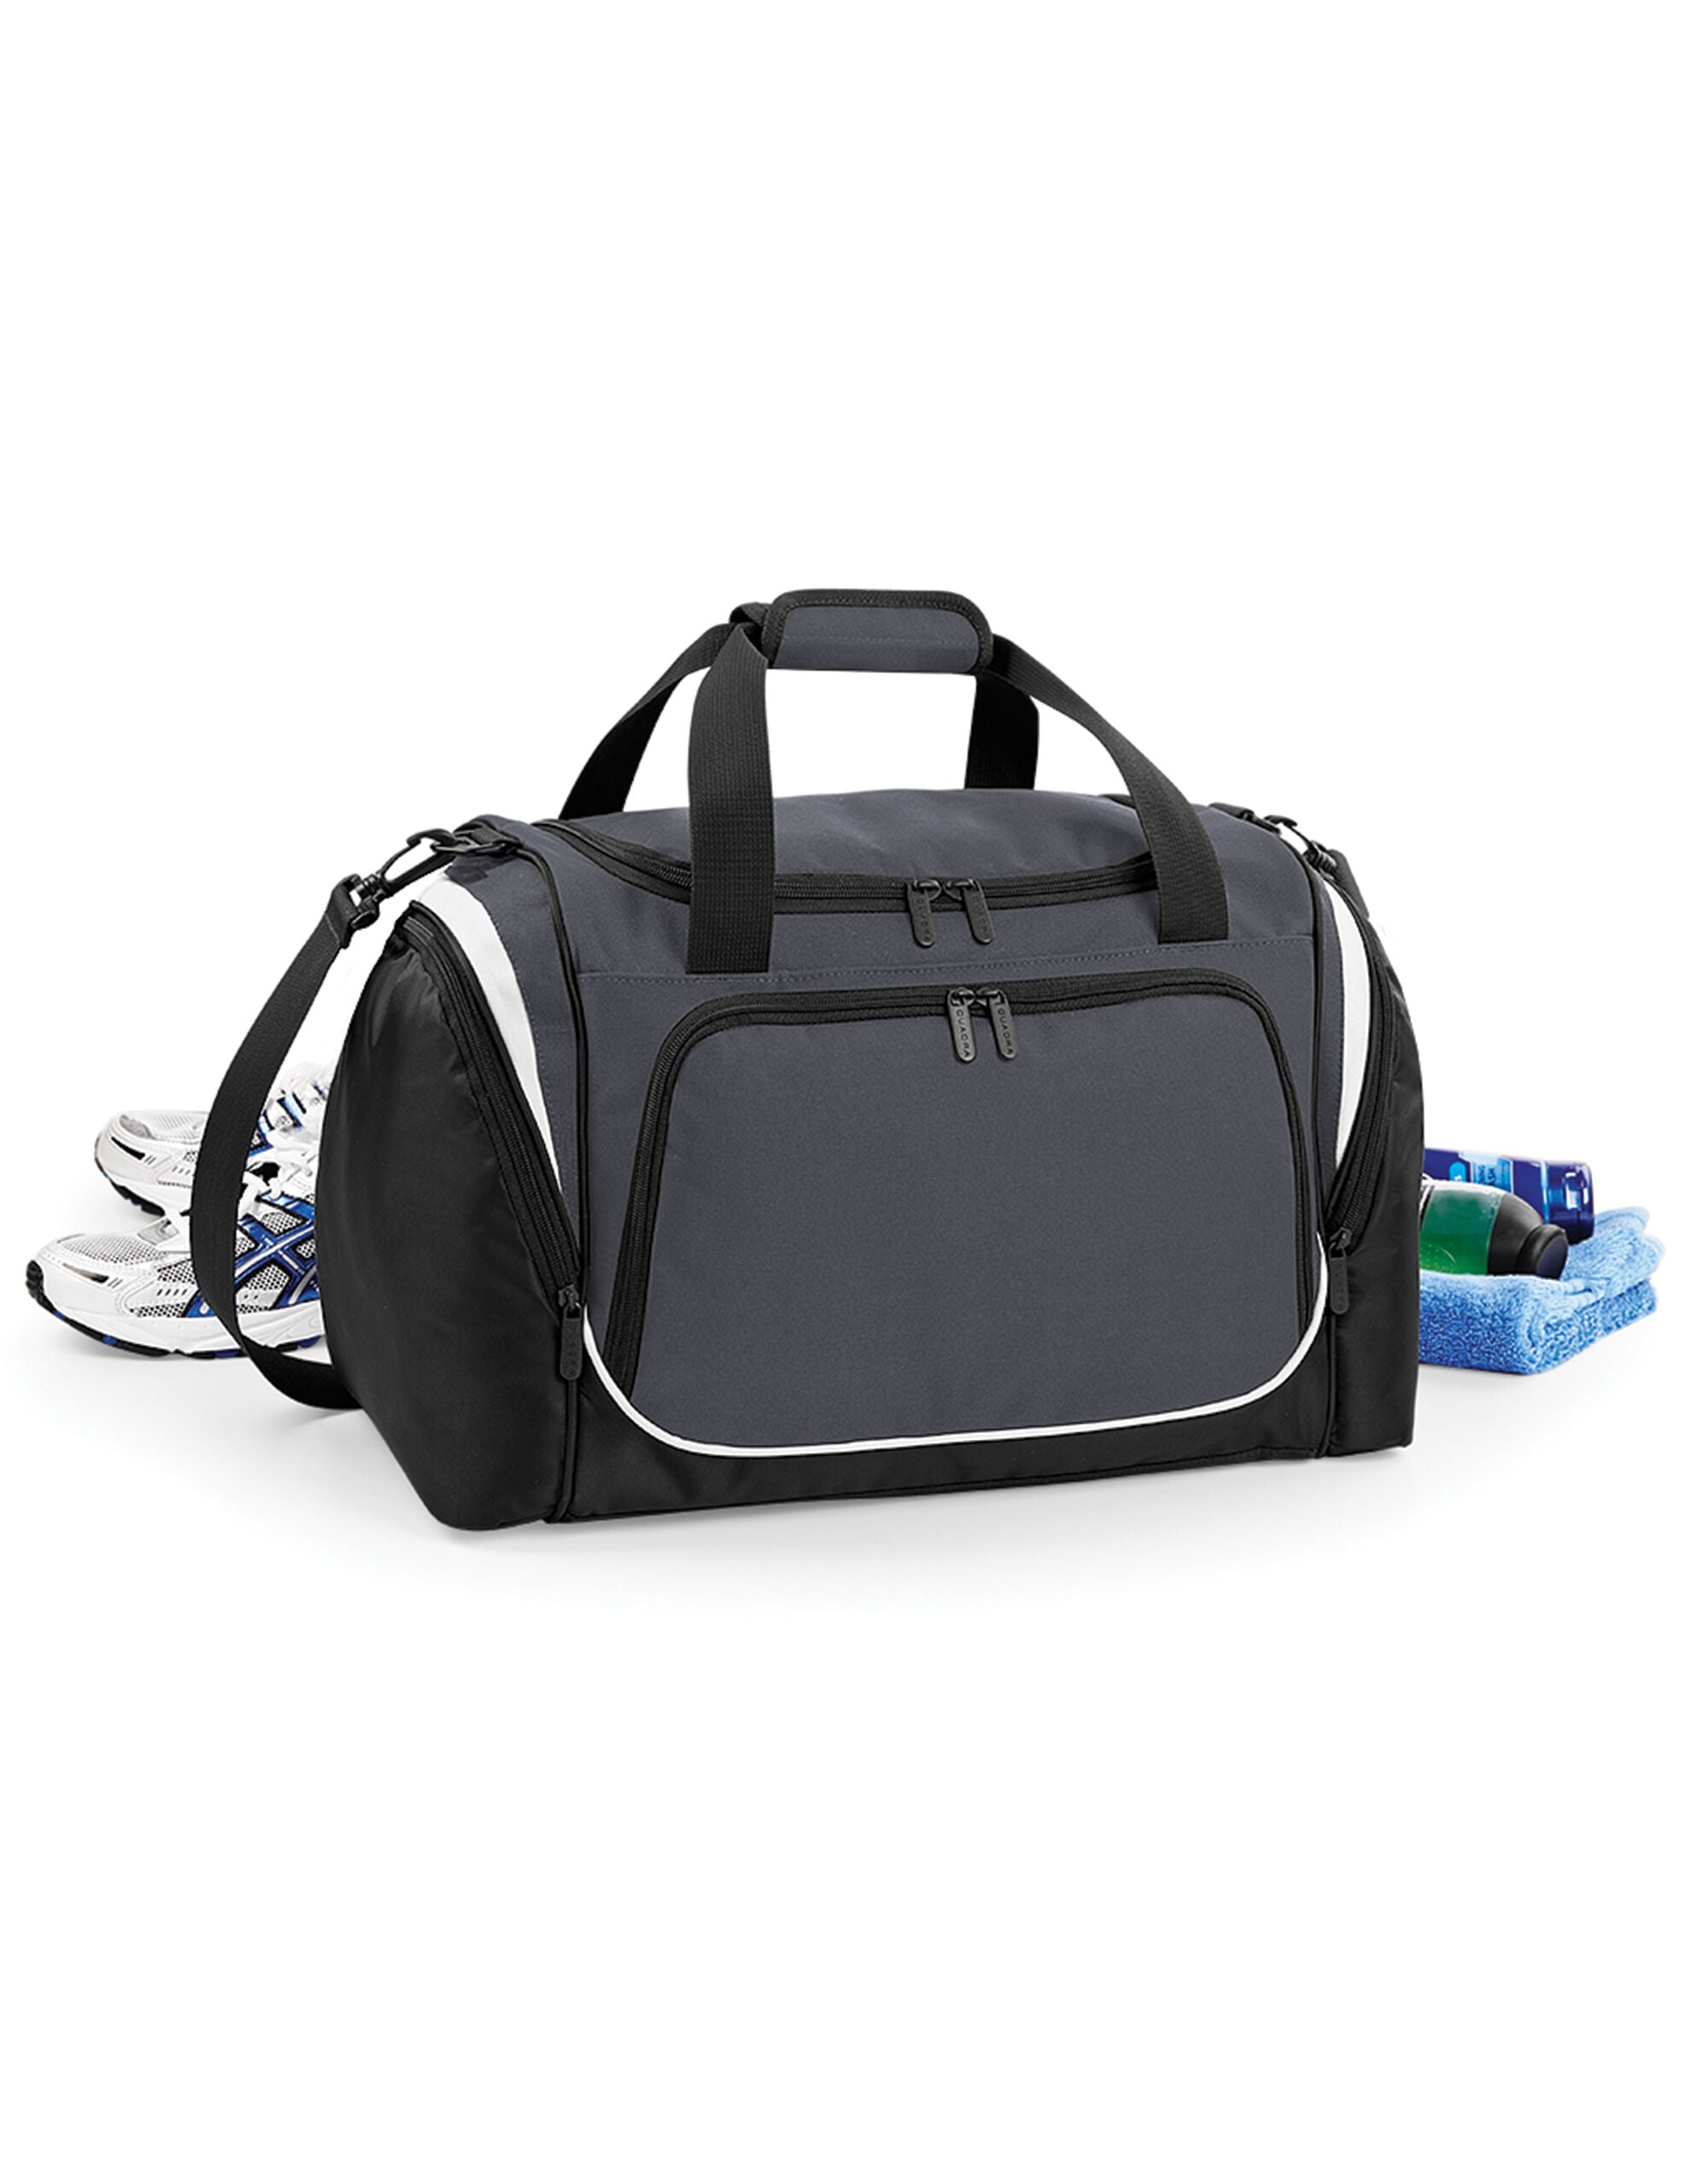 Quarda Pro Team Locker Bag